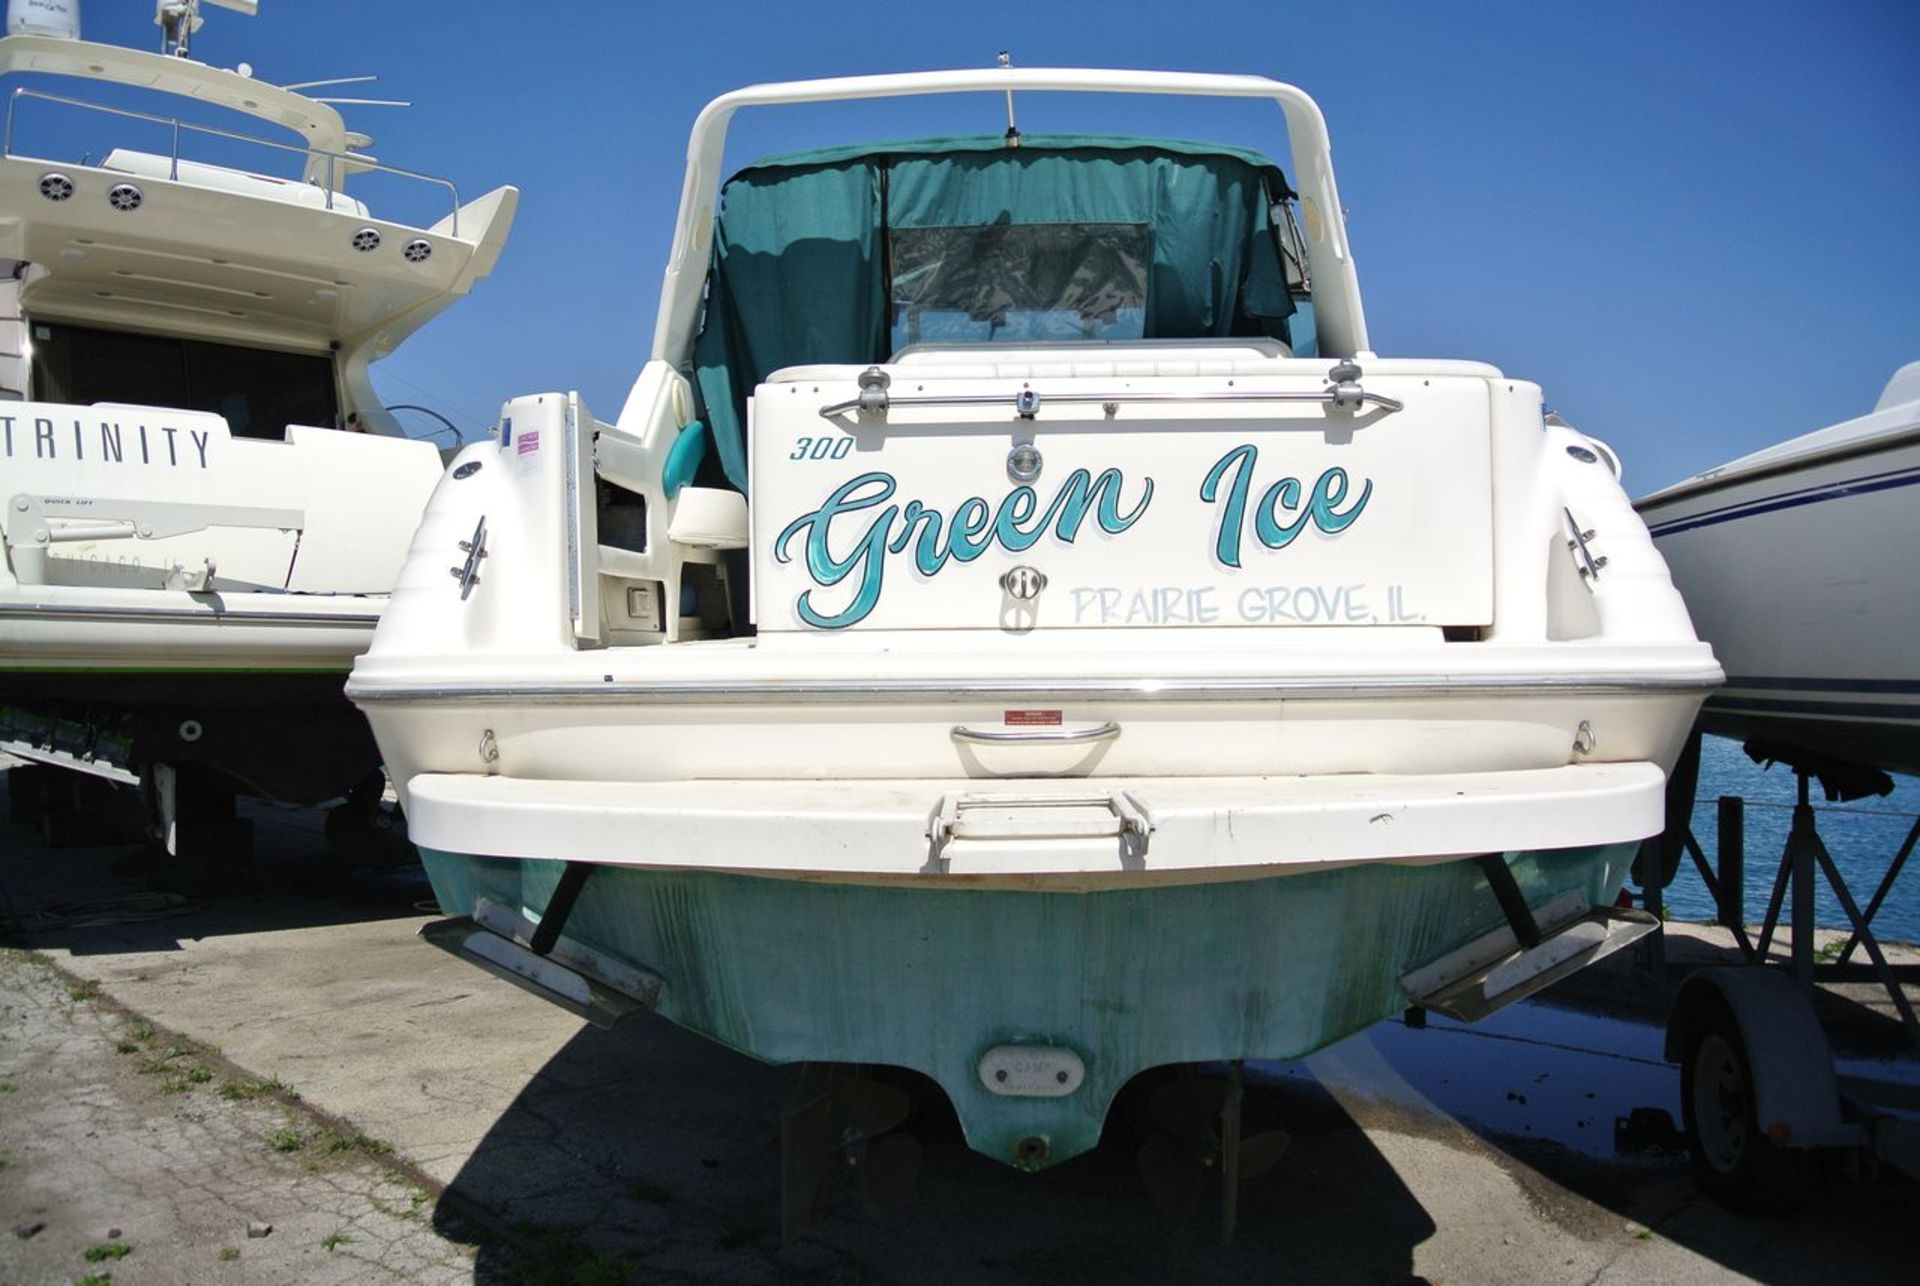 "Green Ice" - 1995 Sea Ray Sundancer Series 300 DA Stern Drive Power Boat, HIN: SERT7626B595; 31 ft. - Image 6 of 26